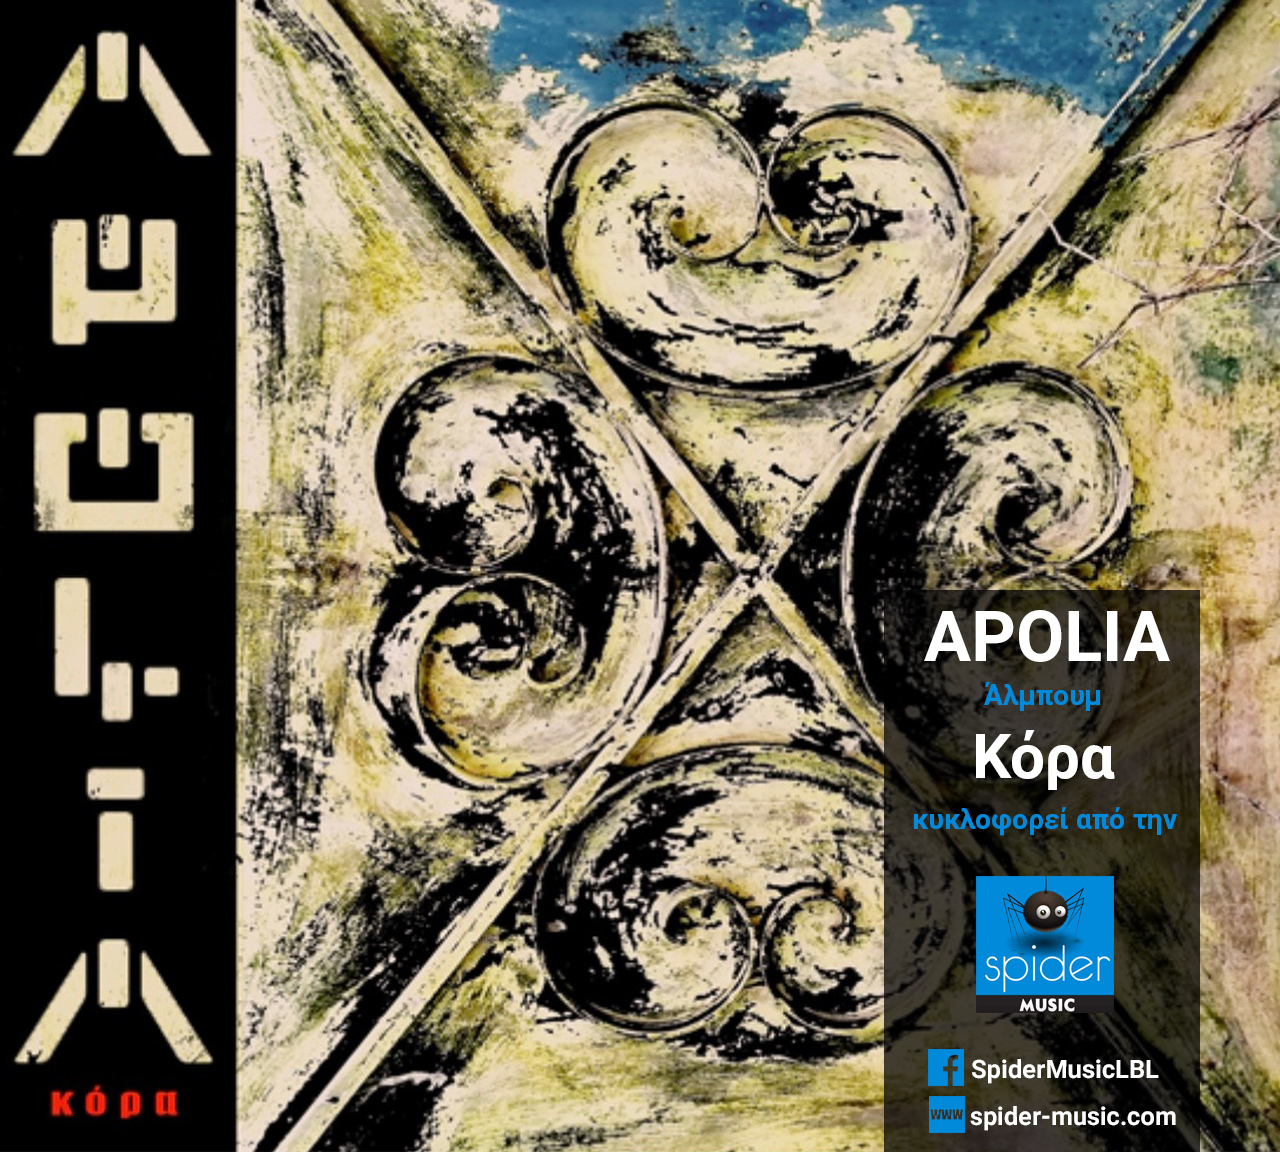 APOLIA – άλμπουμ «Κόρα» από την Spider Music